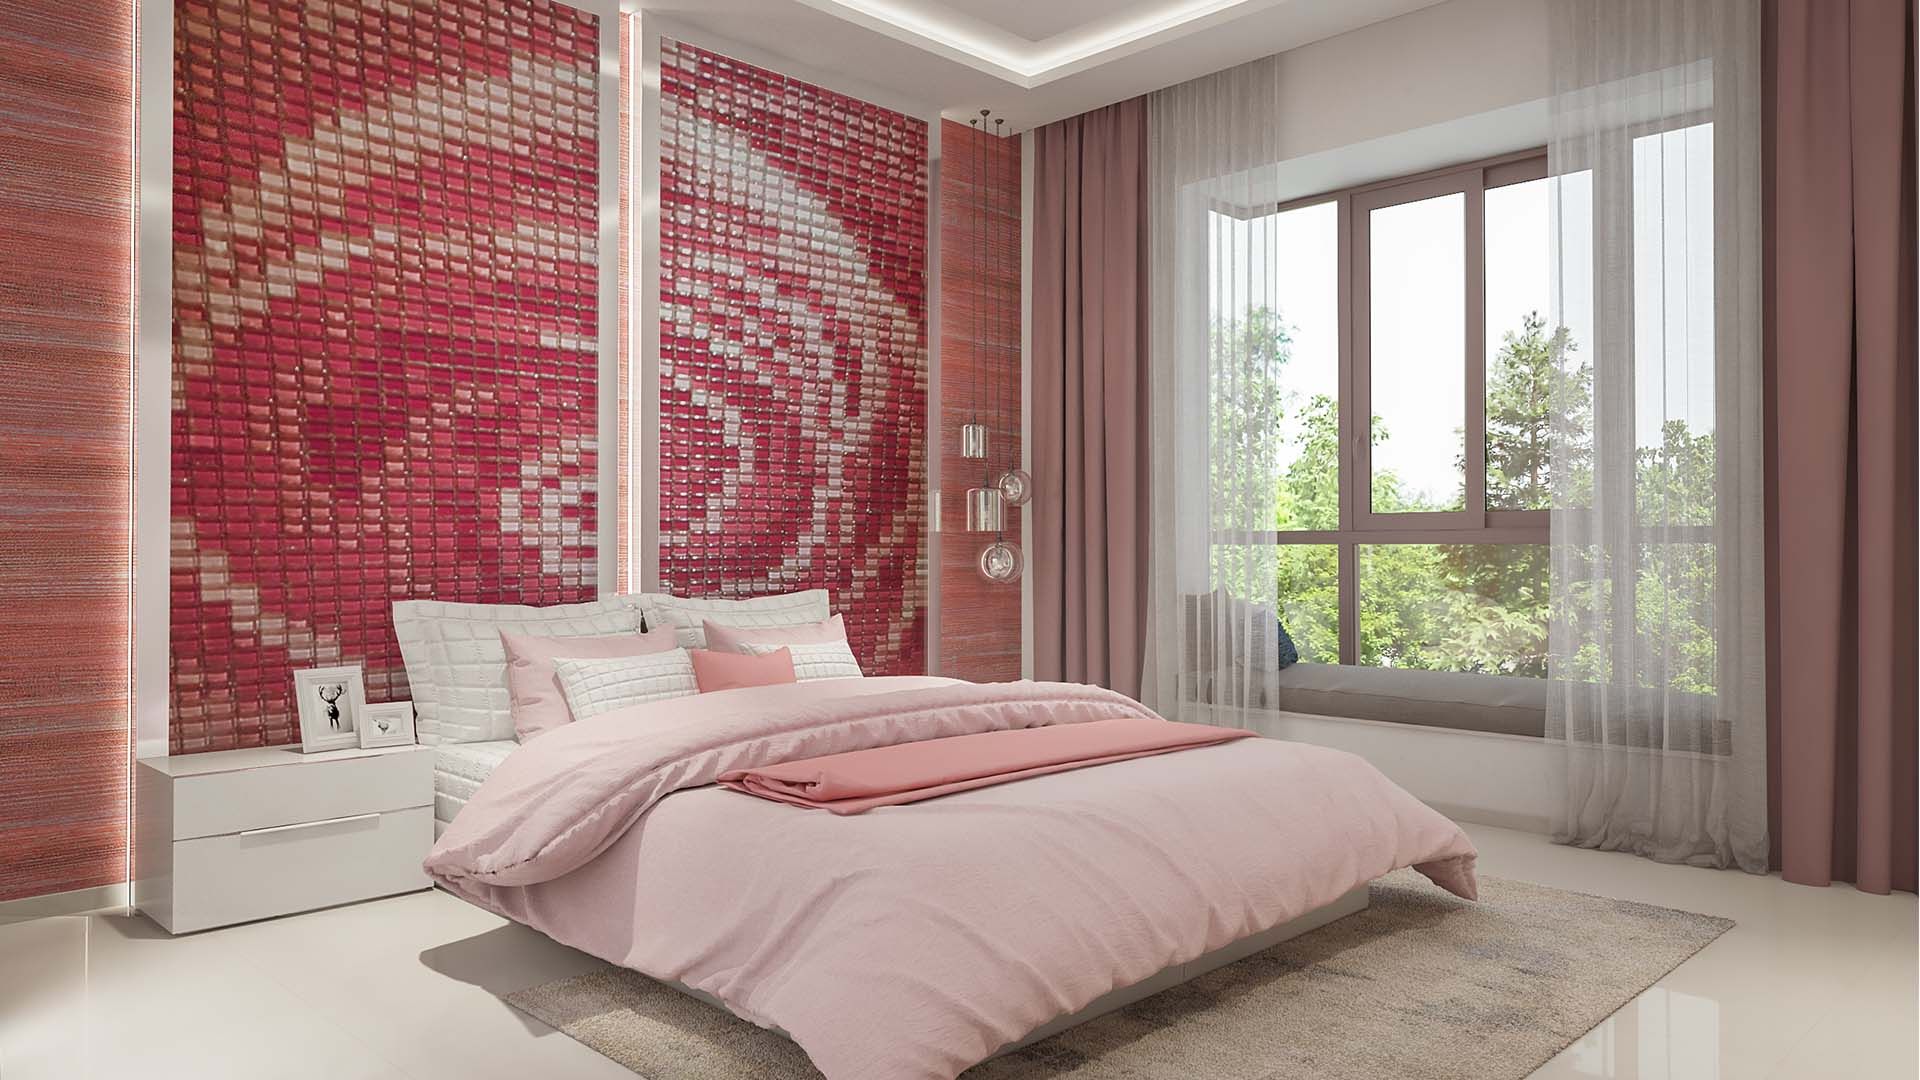 Bedroom De Panache Modern Bedroom pinkroom concept,bedroom ideas,baywindow